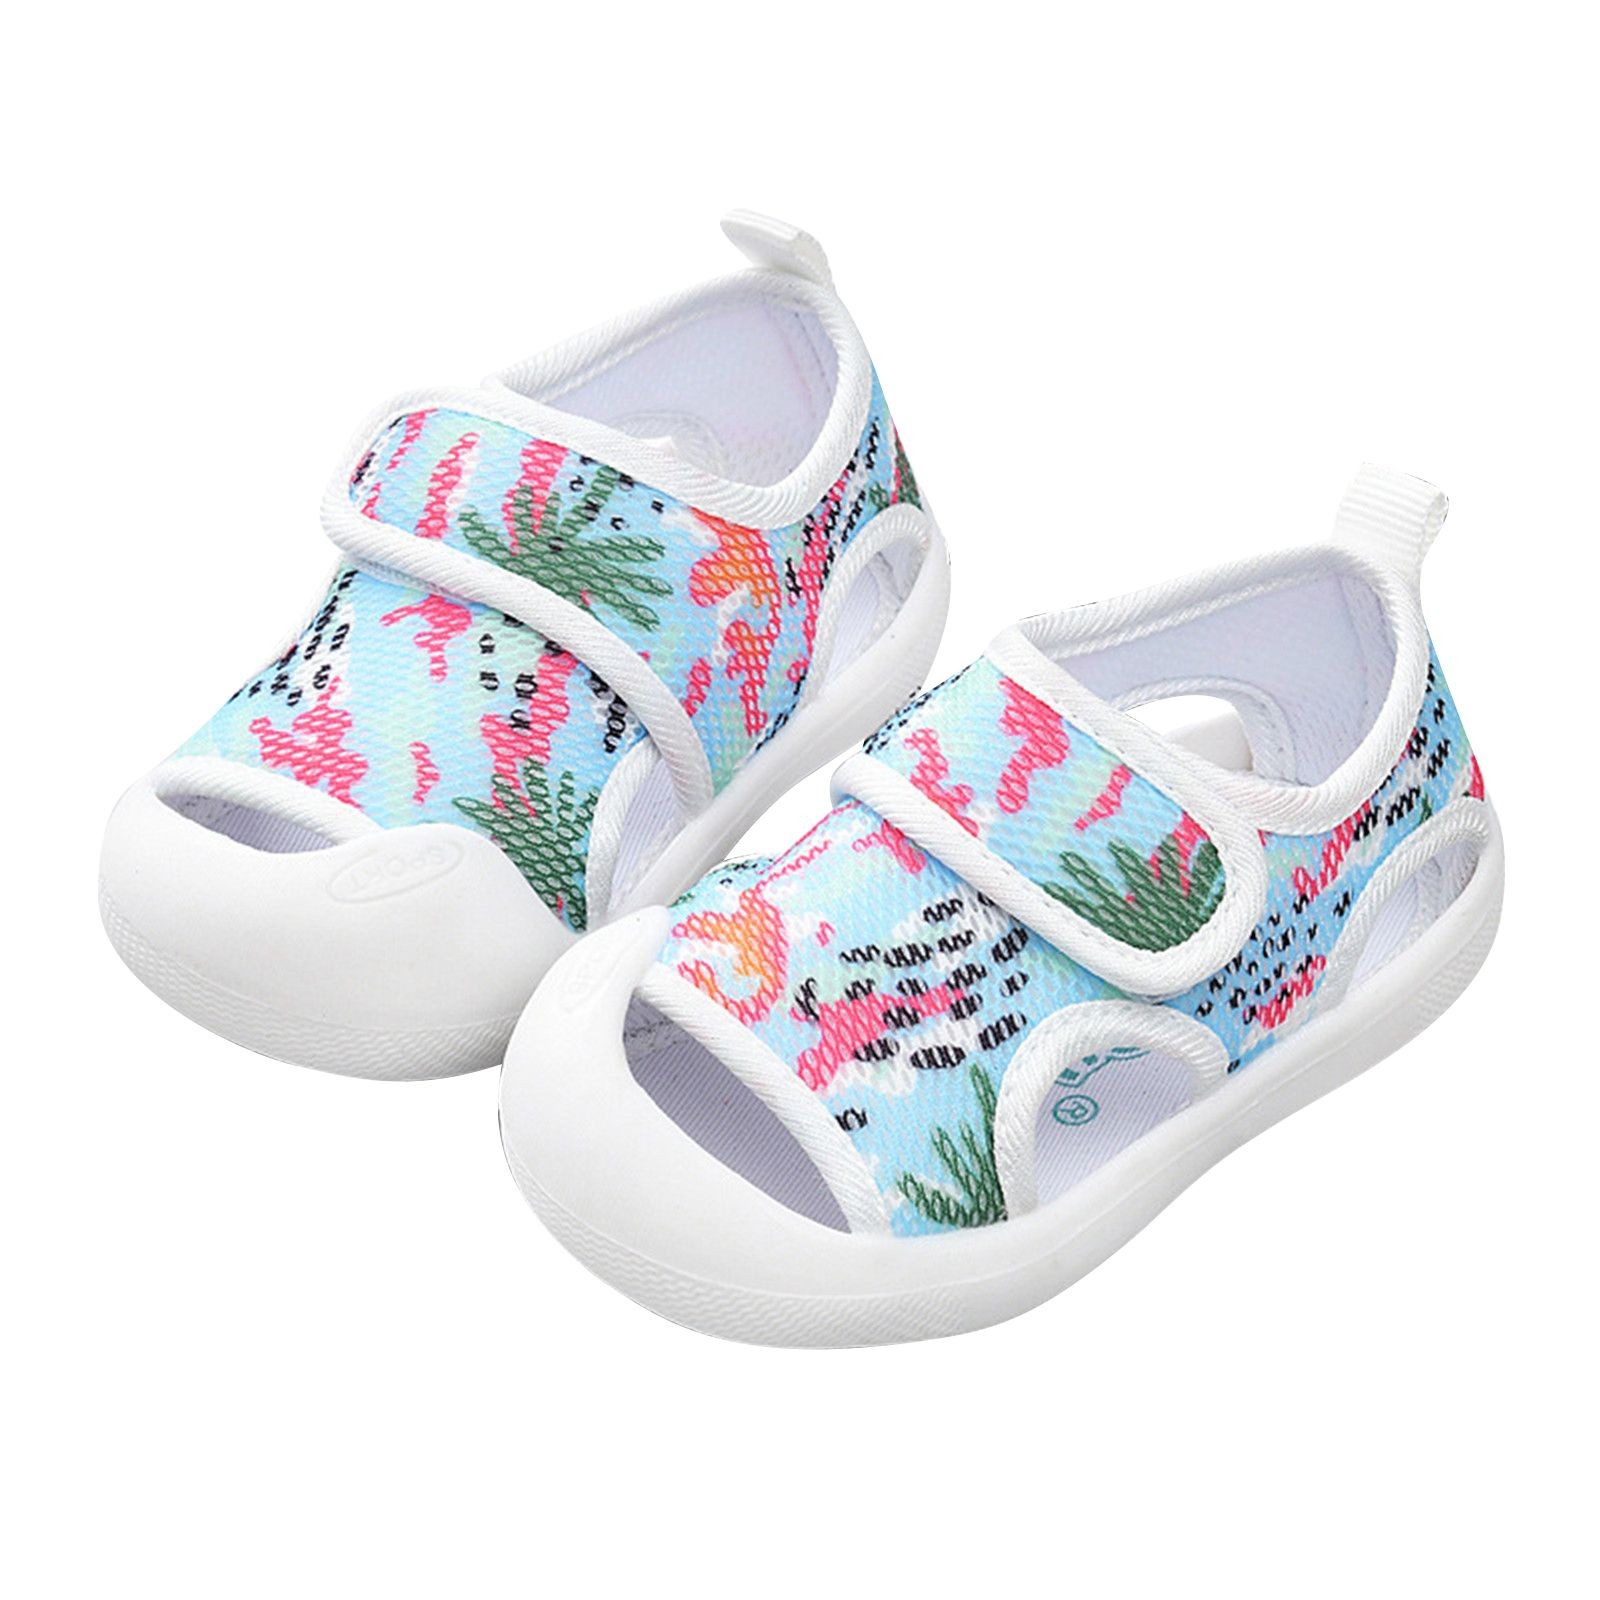 Summer Infant Toddler Girls Boys Shoes Sandals Flat Bottom Non Slio ...